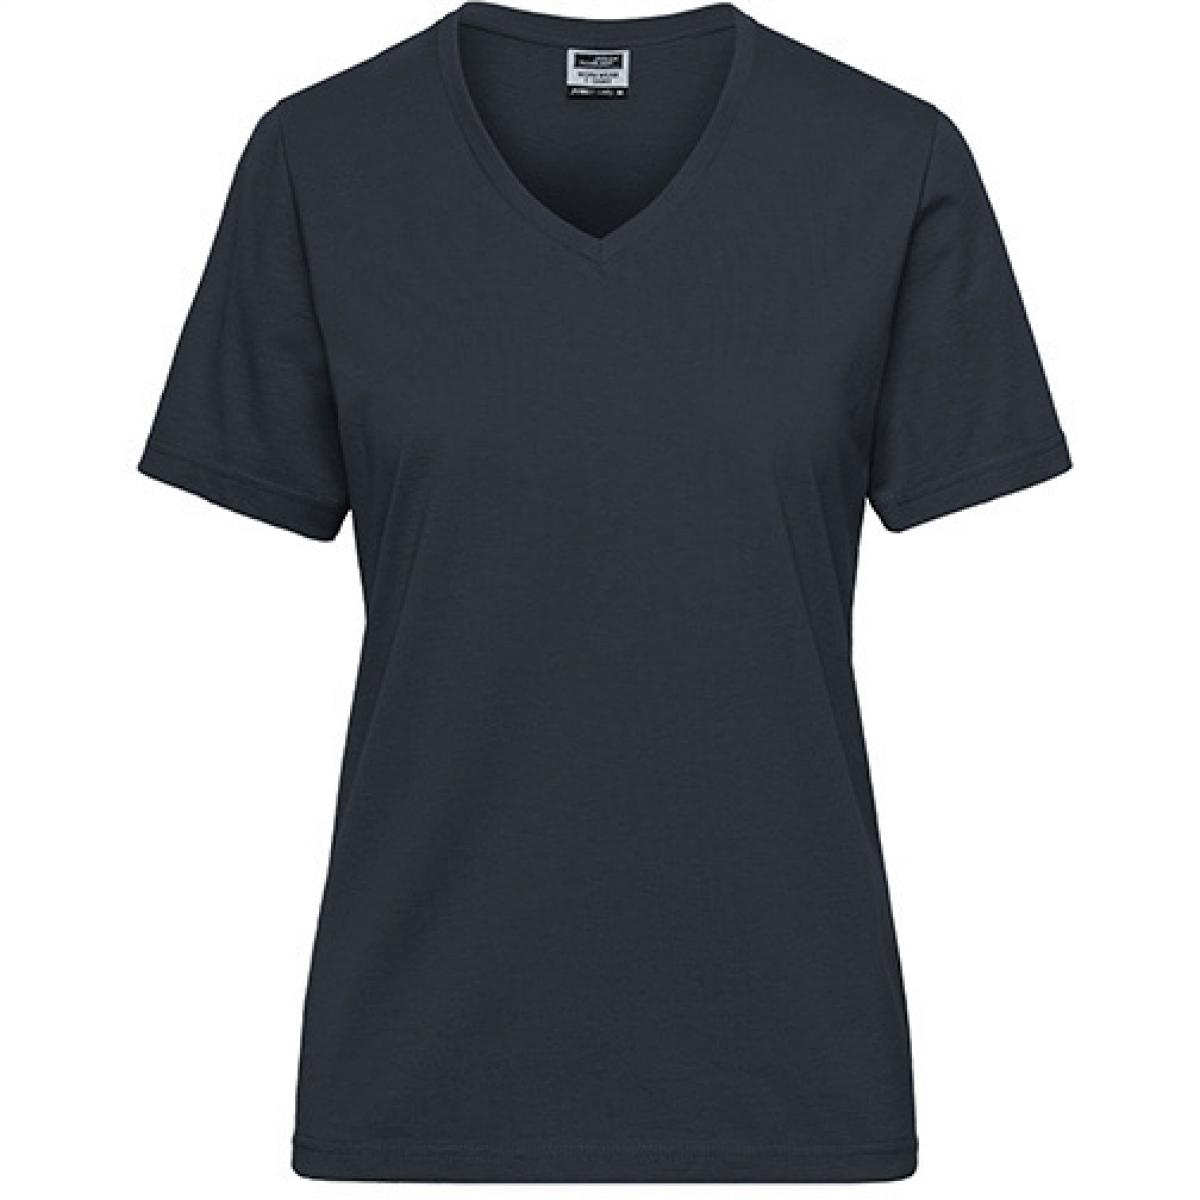 Hersteller: James+Nicholson Herstellernummer: JN1807 Artikelbezeichnung: Ladies‘ BIO Workwear T-Shirt / Damen T-Shirt - Waschbar 60C Farbe: Carbon